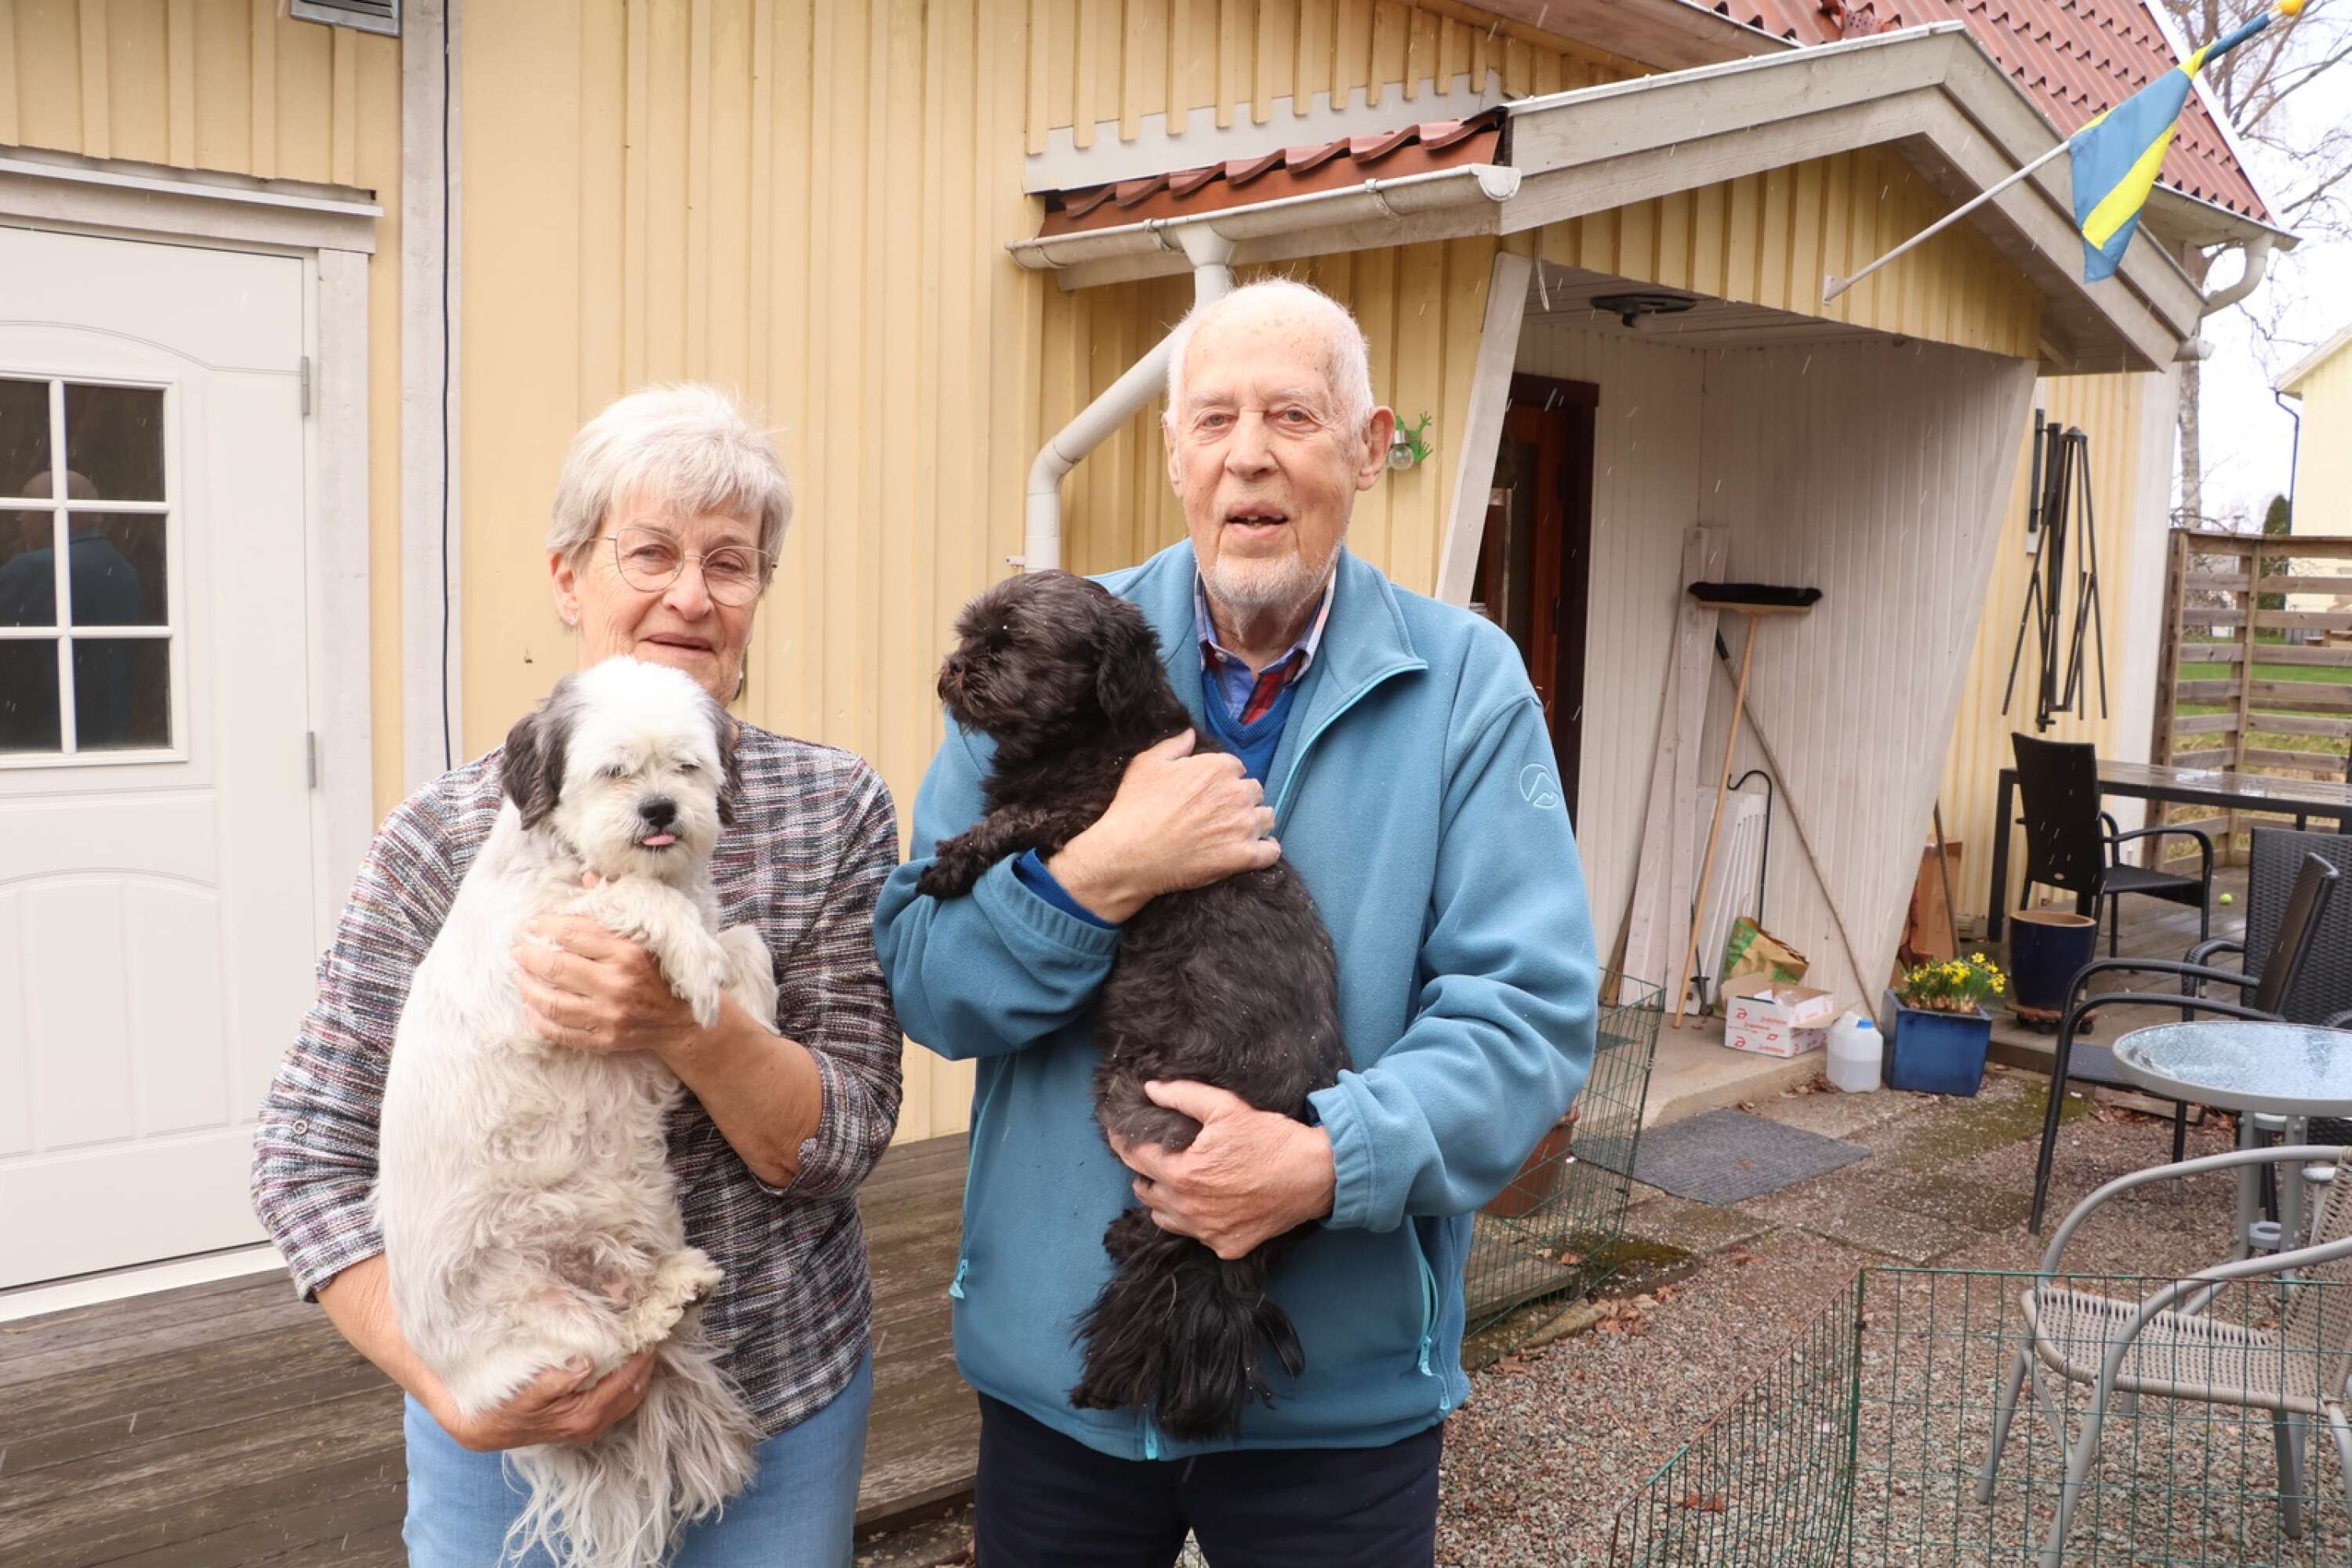 Nils Josefsson, hembygdsforskare och hembygdsförfattare, fyller 90 år. På bilden syns han tillsammans med sambon Maj-Britt och parets två hundar, Doris och Malte.